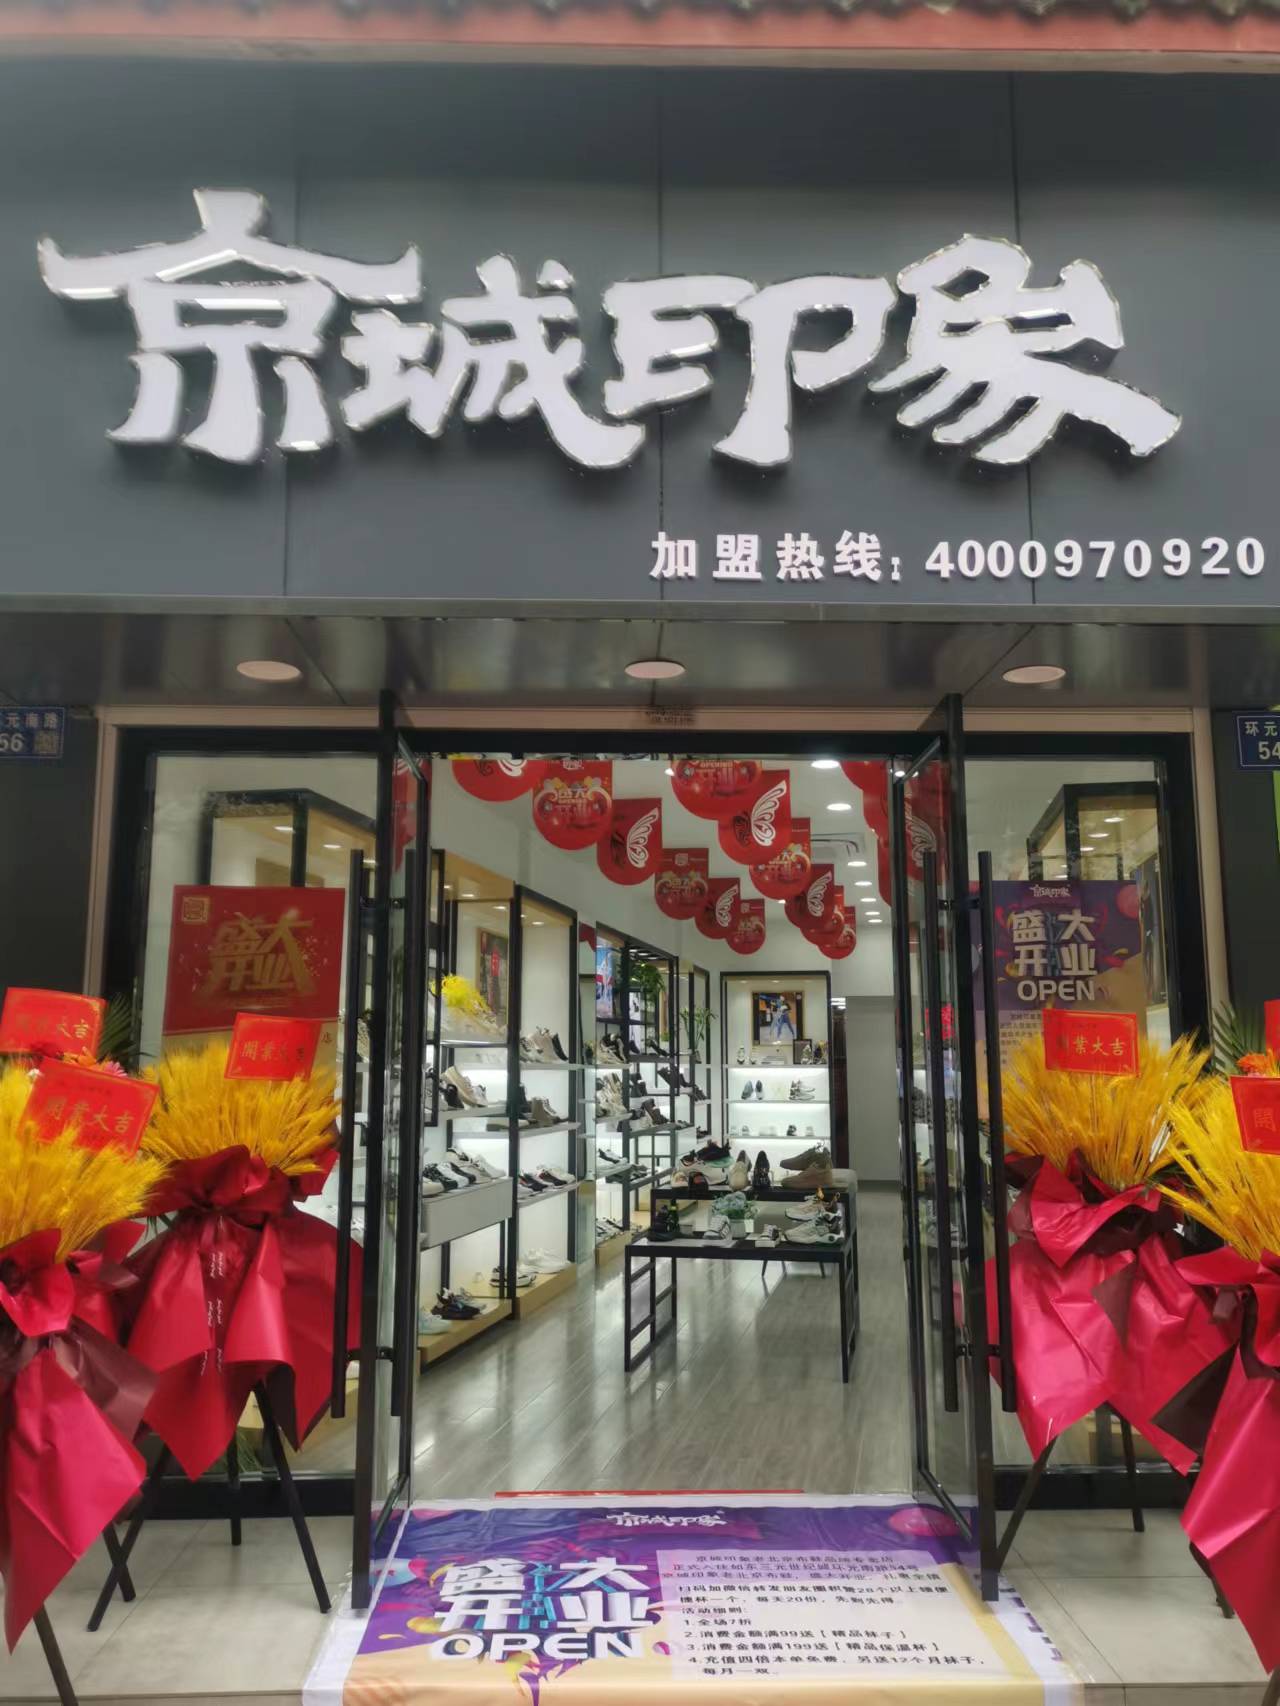 贺：京城印象老北京布鞋加盟店江苏南通金老板盛大开业！